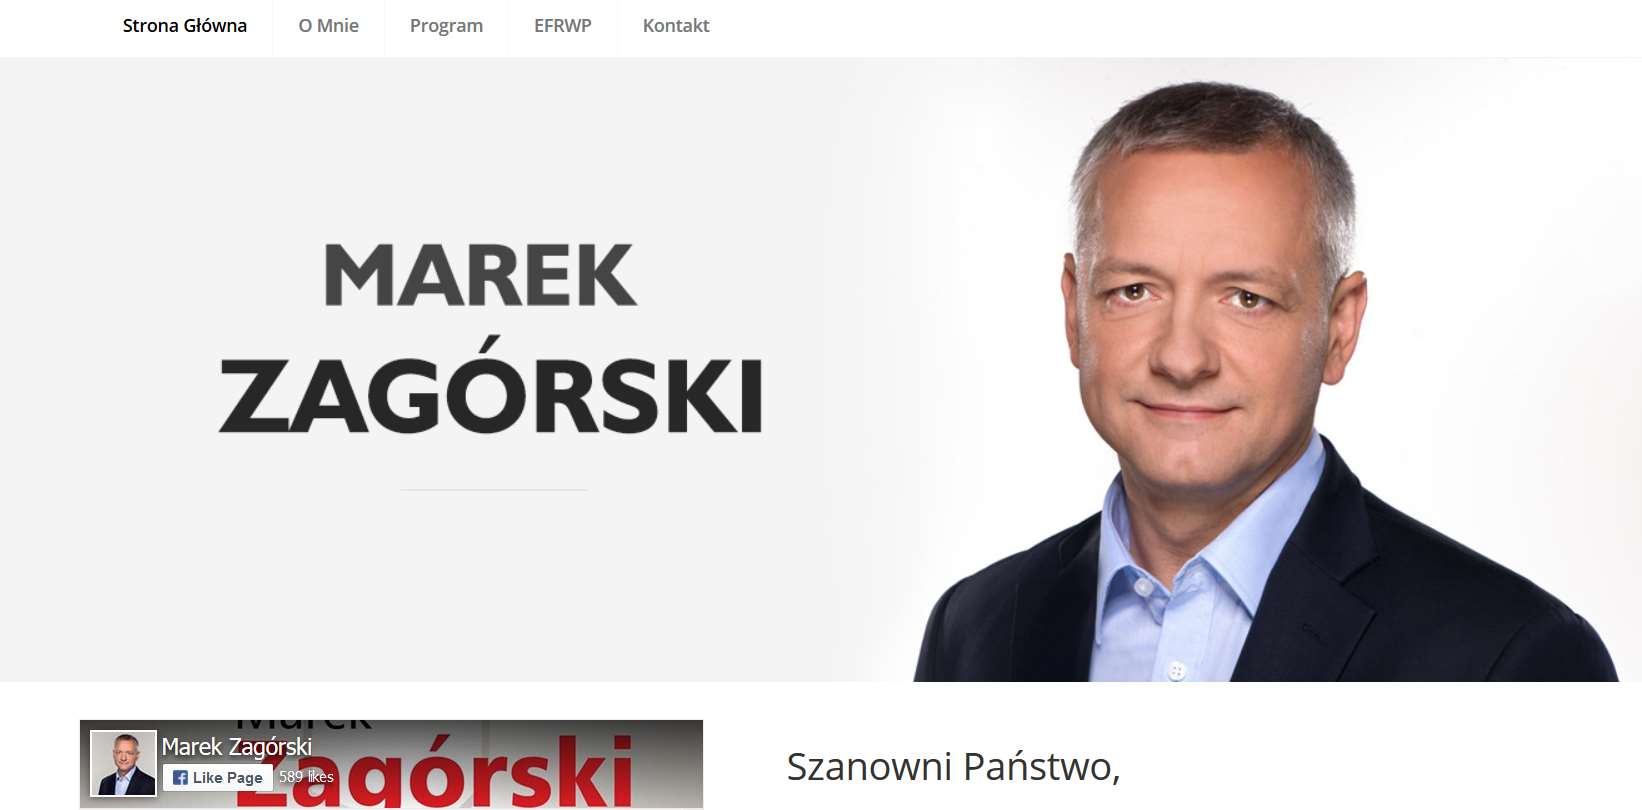 Strona wizytówka dla lidera politycznego oraz prezesa Fundacja Europejskiego Funduszu Rozwoju Wsi Polskiej, działającej na rzecz rozwoju polskiej wsi.